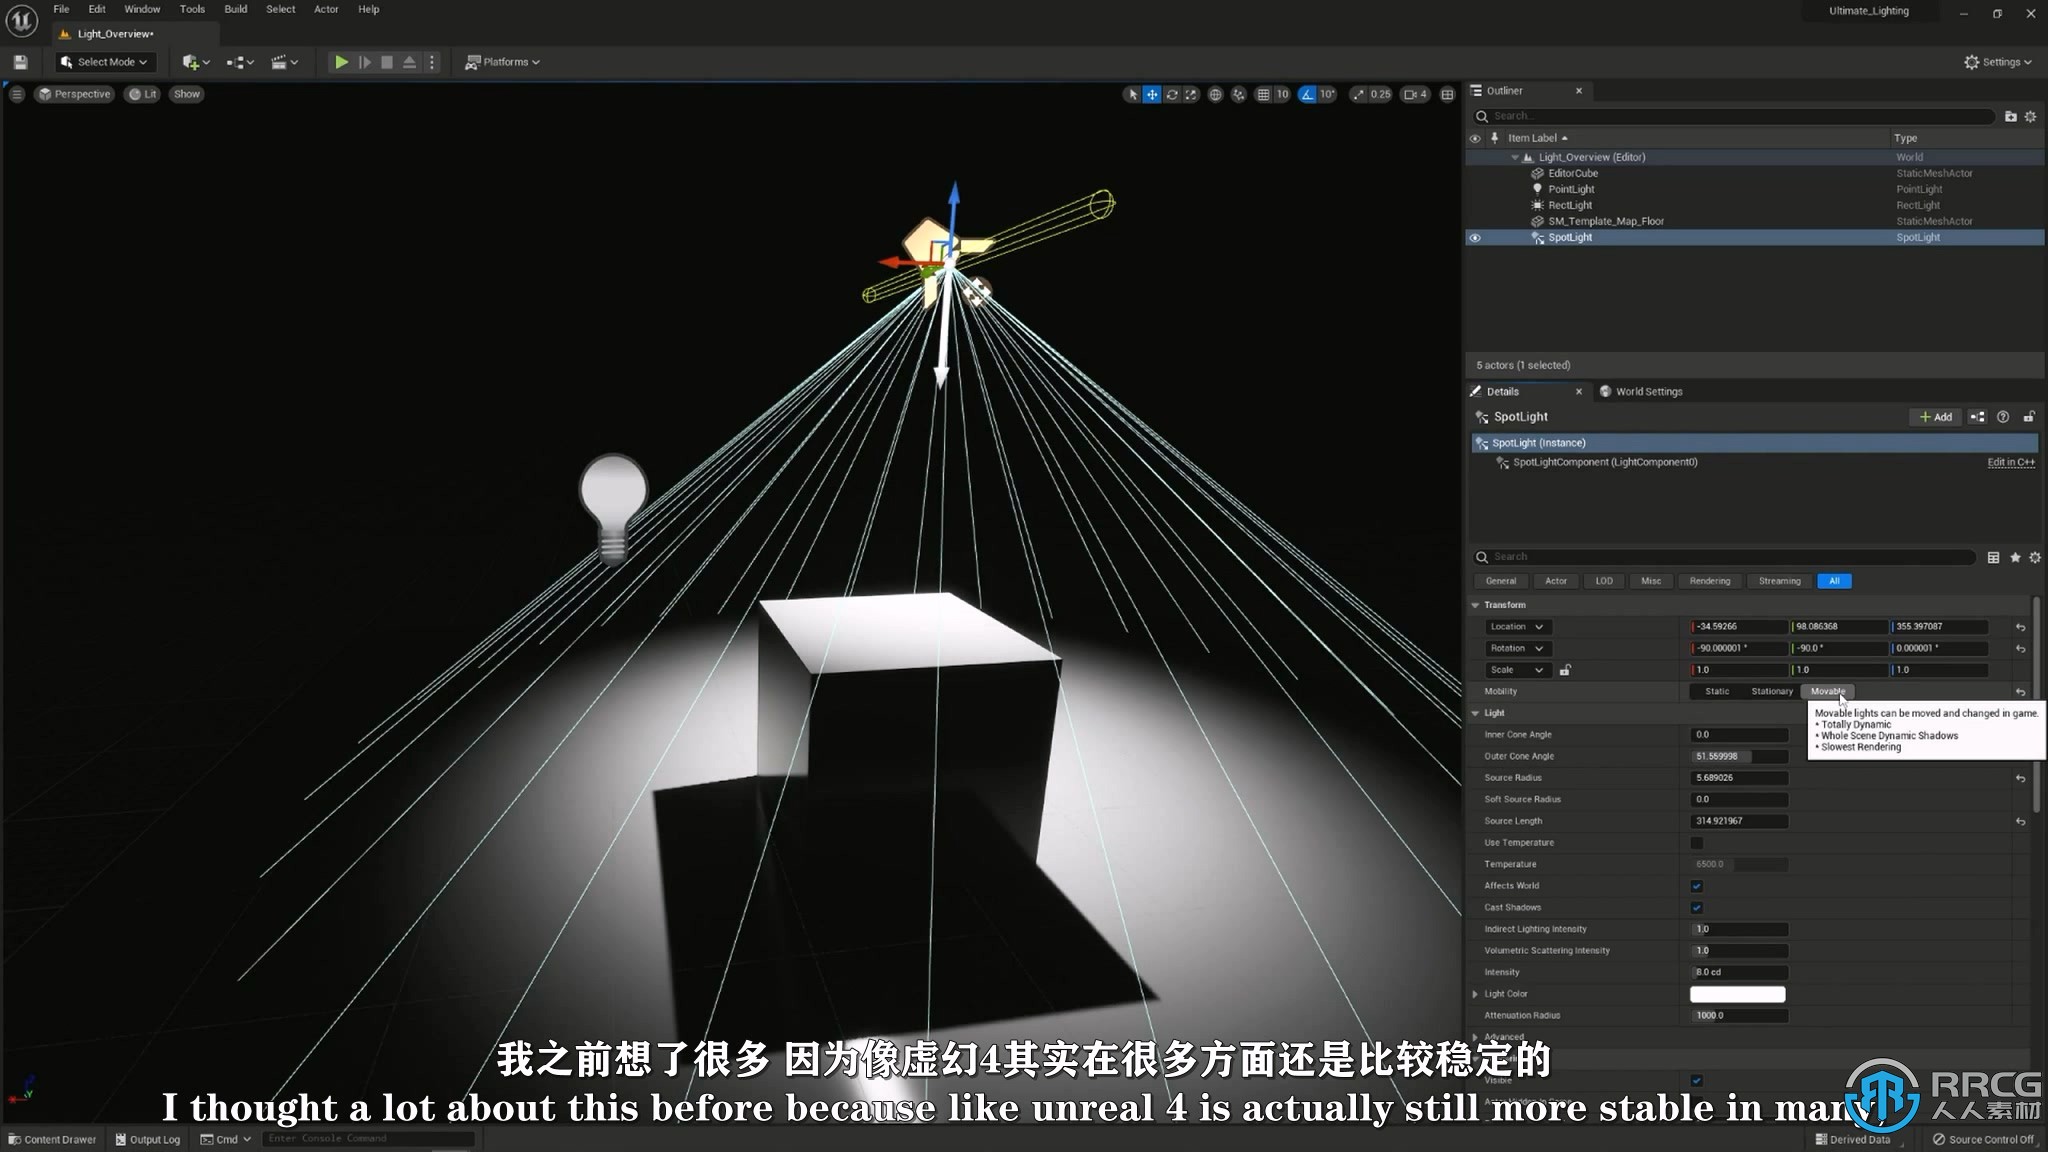 【中文字幕】UE5虚幻引擎大型开放环境灯光照明技术视频教程